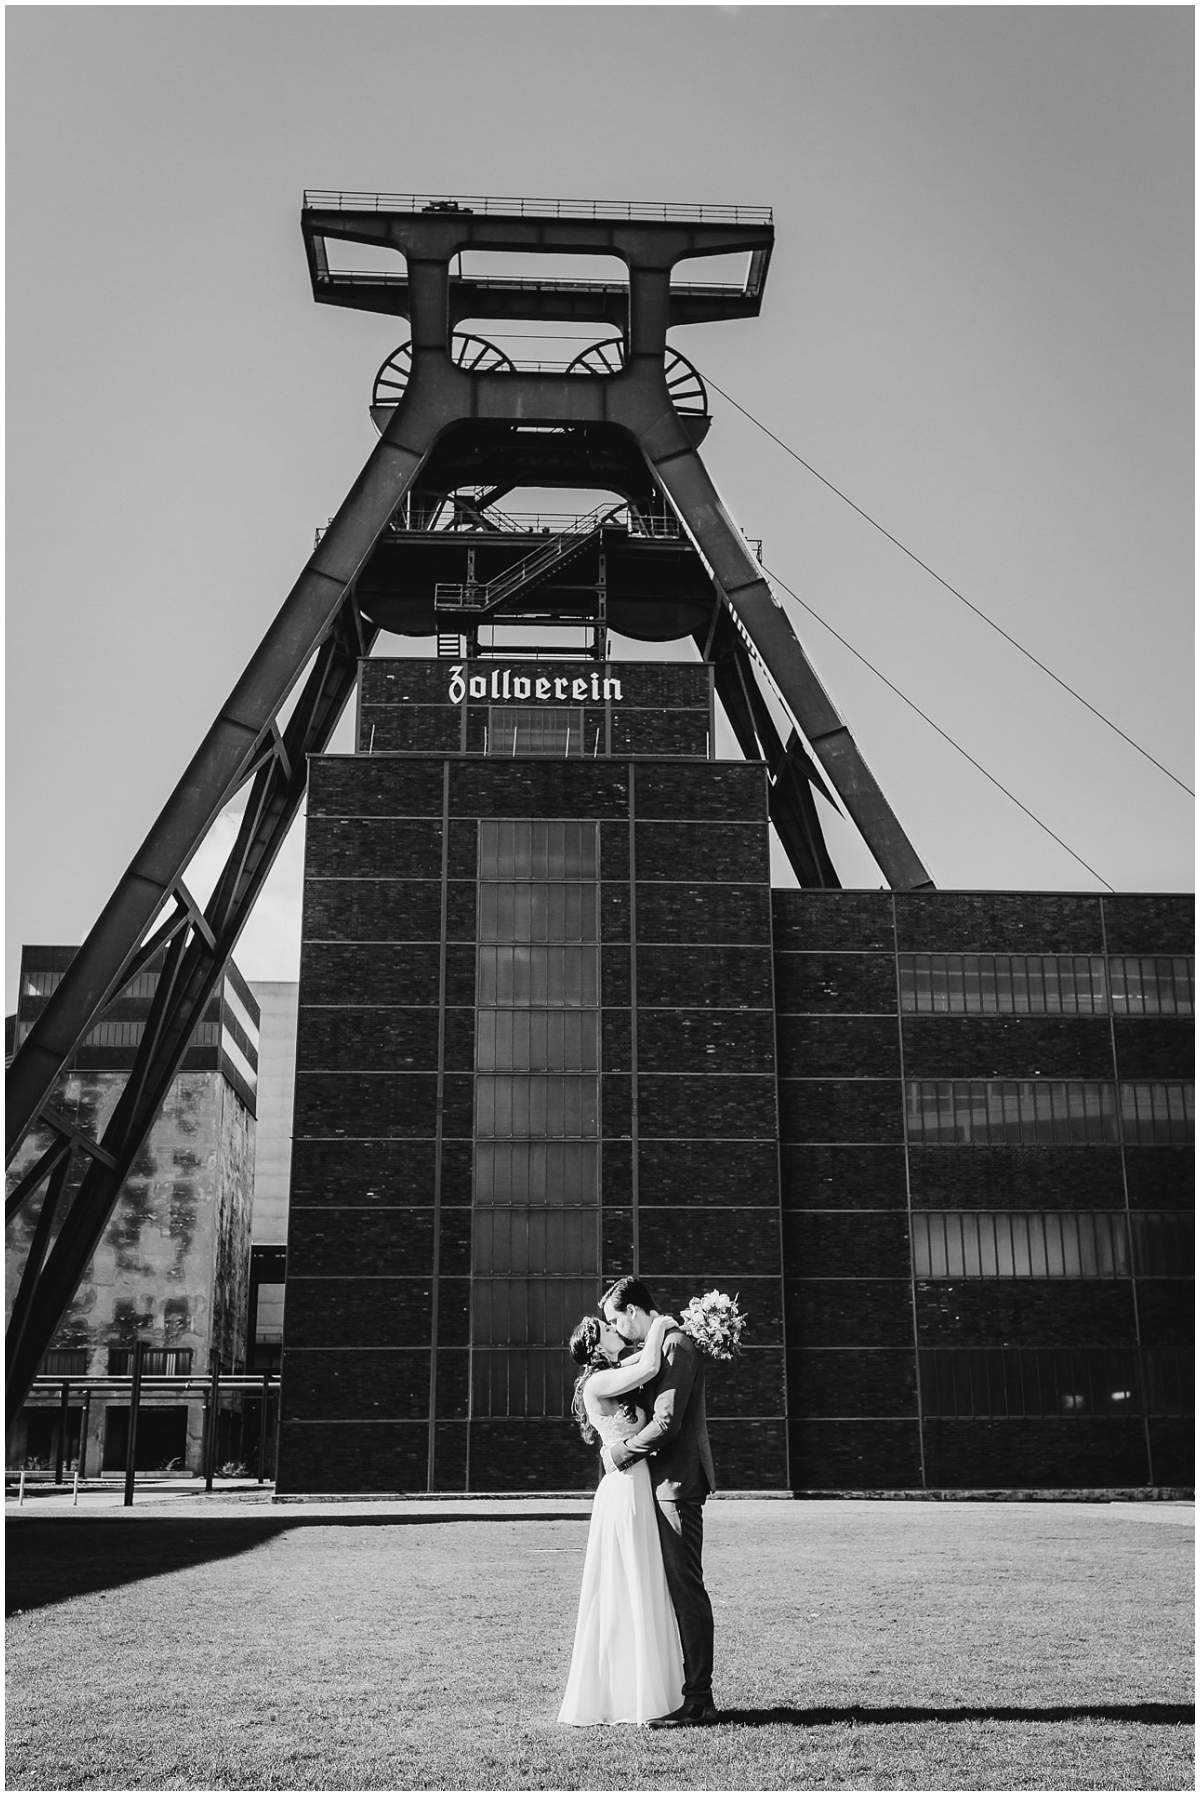 Brautpaarshooting auf Zeche Zollverein in Essen nach der standesamtlichen Trauung im Rathaus Essen-Kray